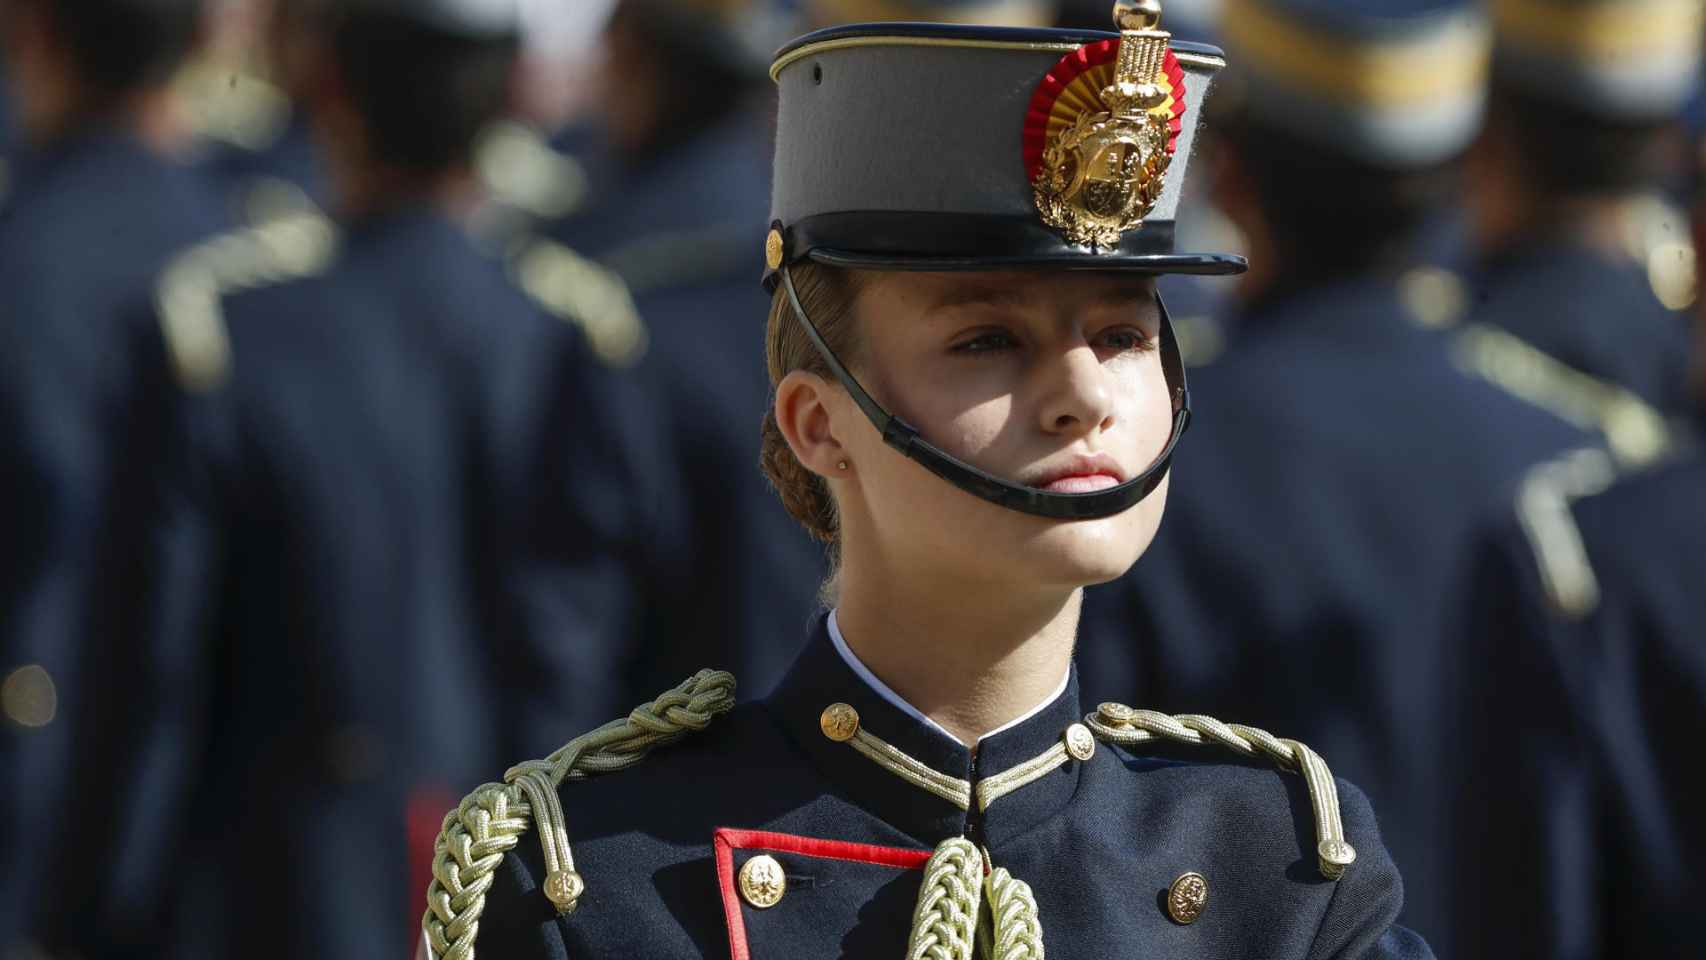 La Jura de Bandera de Leonor en imágenes: del uniforme de época a la emoción de Letizia